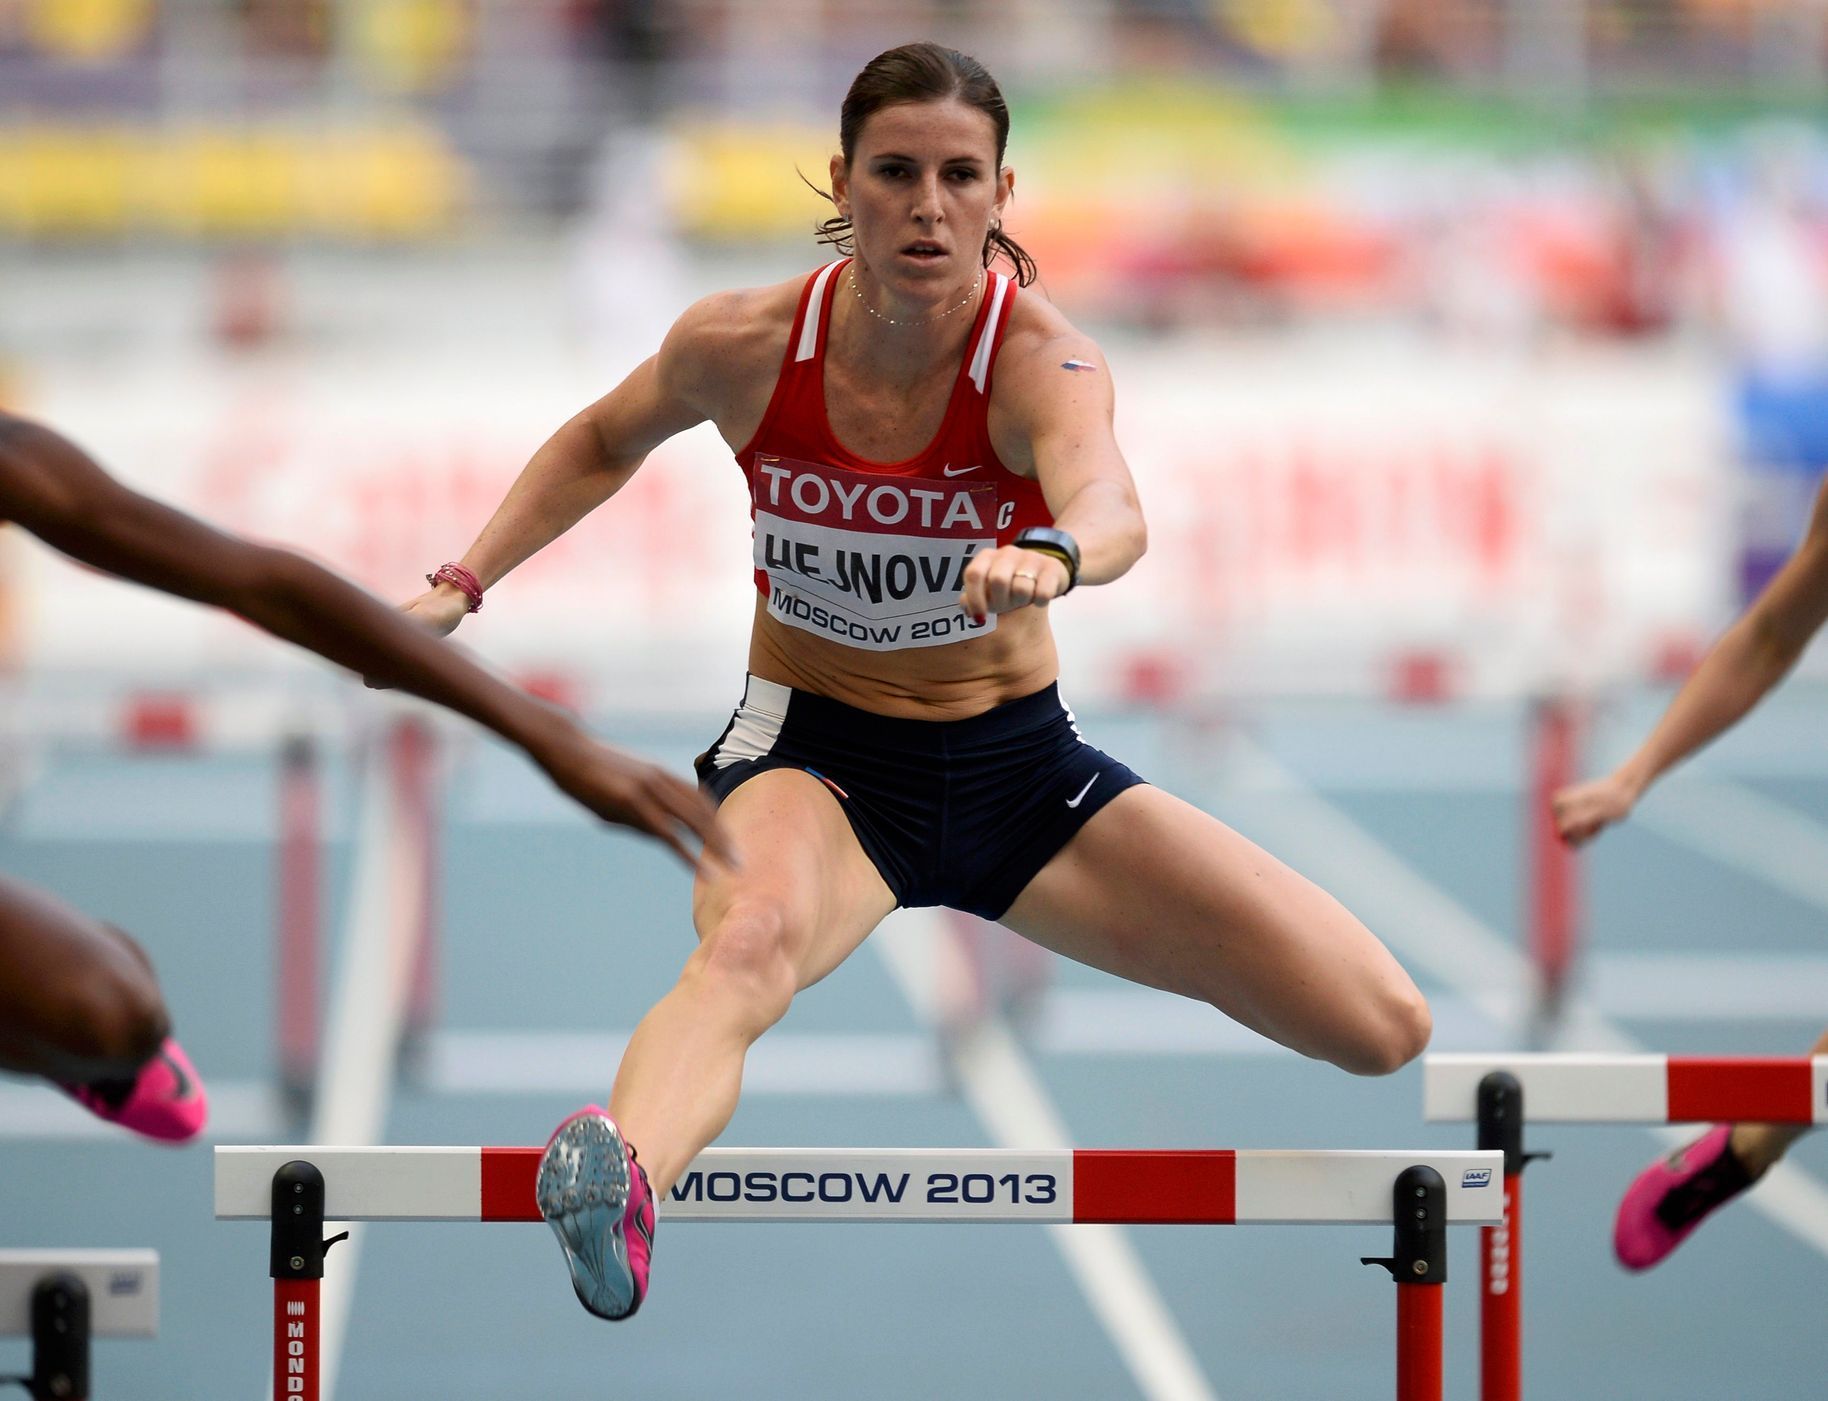 MS v atletice 2013, 400 m př. - semifinále: Zuzana Hejnová